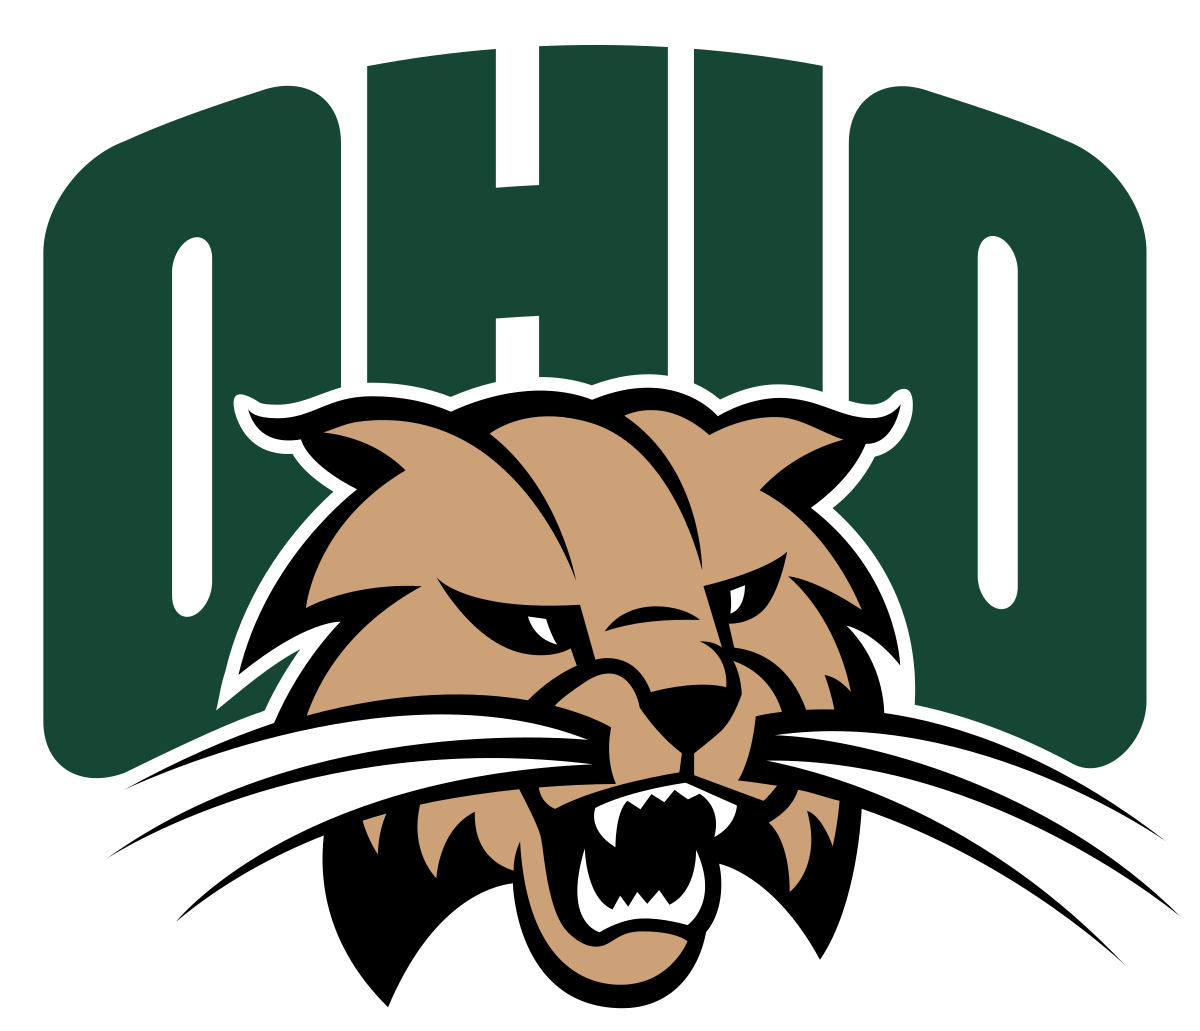 Ohio Bobcats Wikipedia